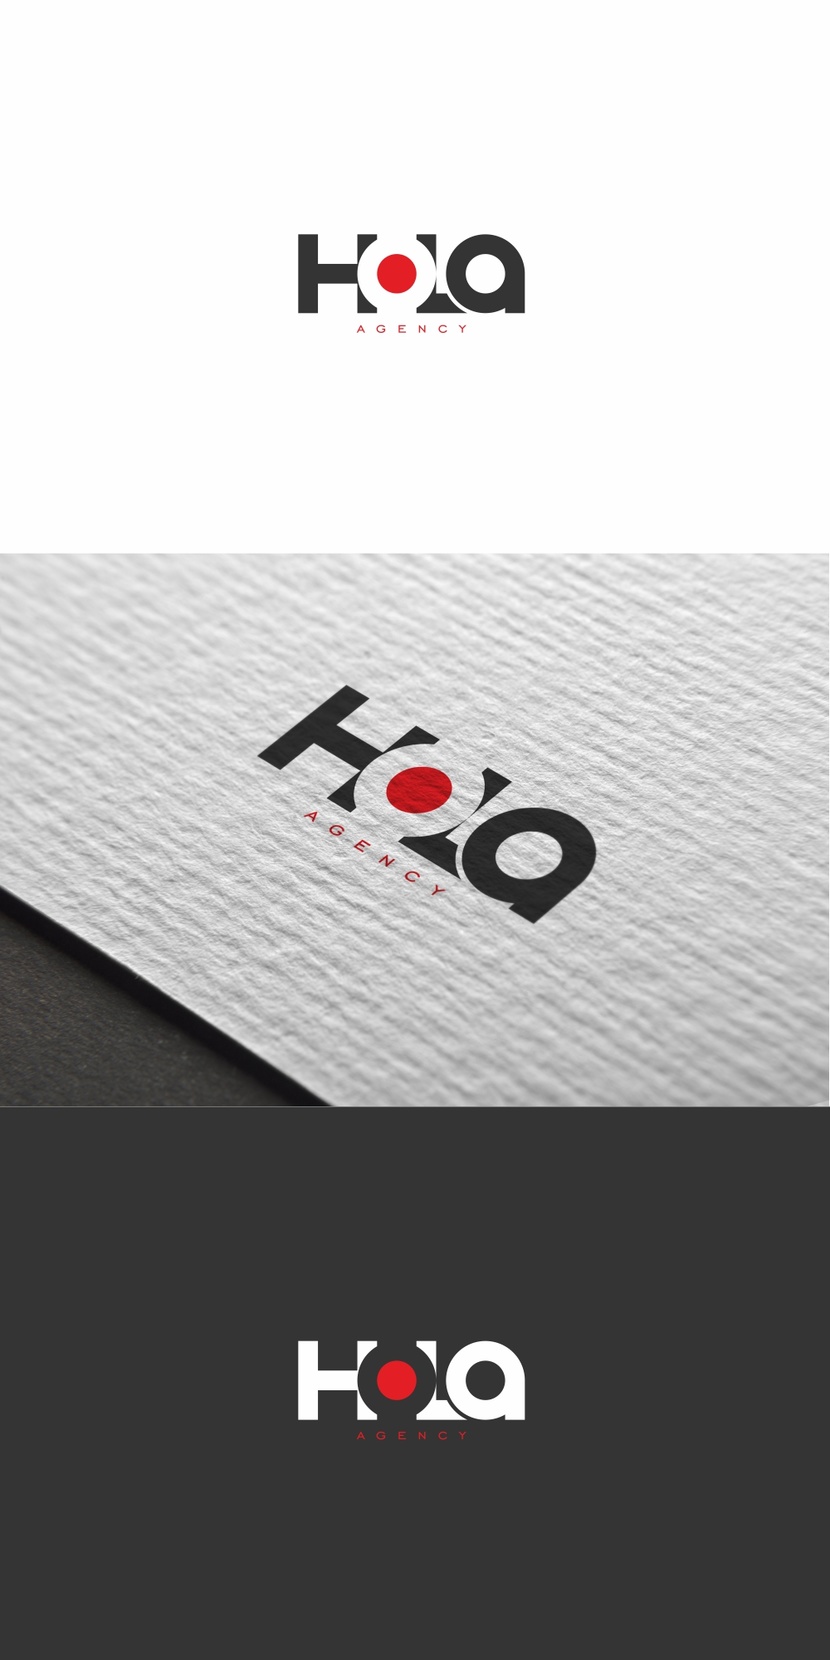 Разработка логотипа для SMM-агентства "HOLA"  -  автор Андрей Мартынович